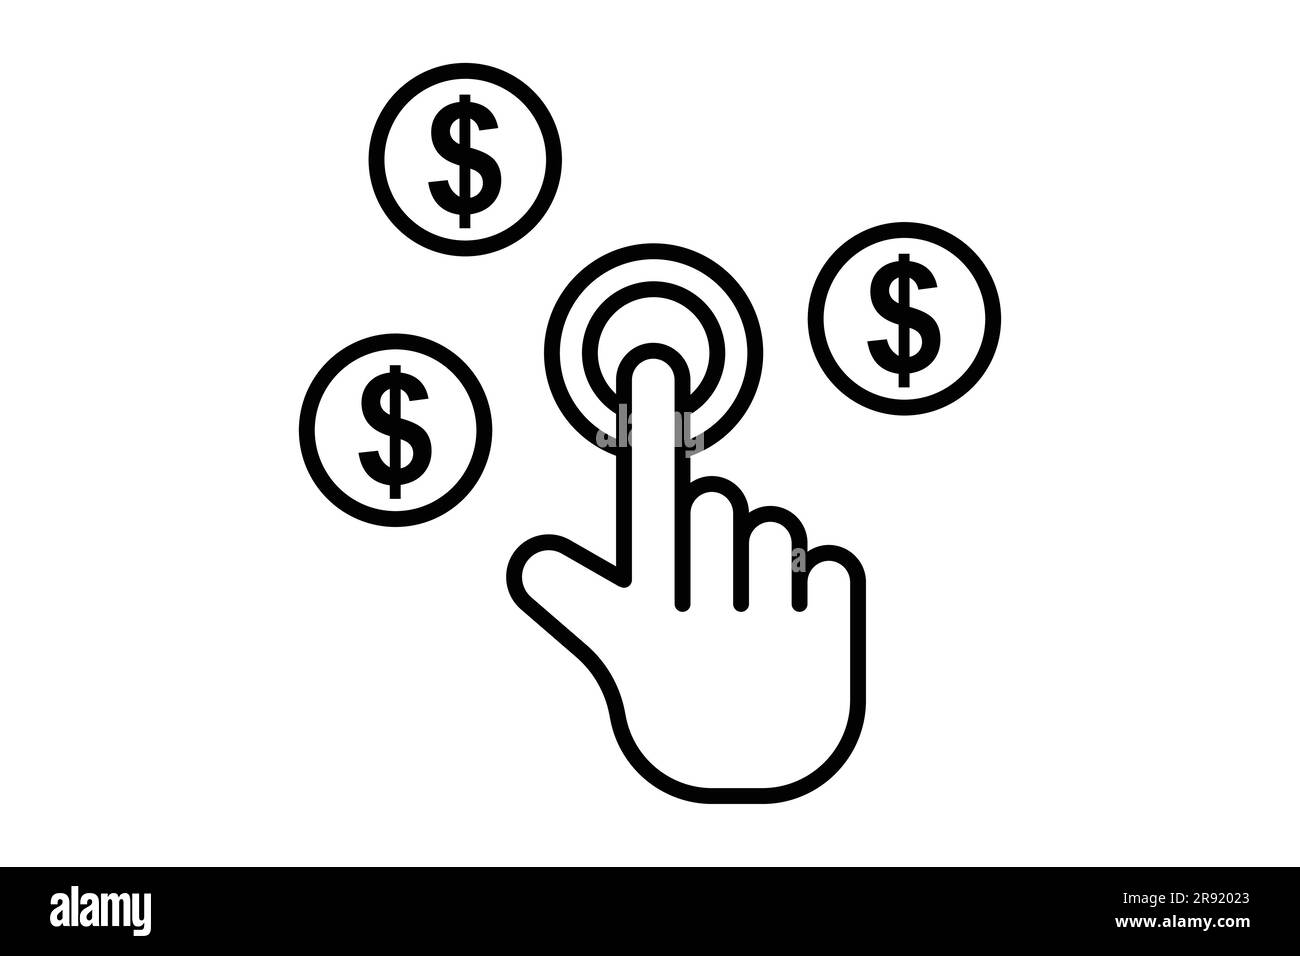 Symbol für Bezahlung pro Klick. Handberührung mit Dollar, klicken Sie auf Money seo. Liniendesign. Einfache Vektorkonstruktion editierbar Stock Vektor